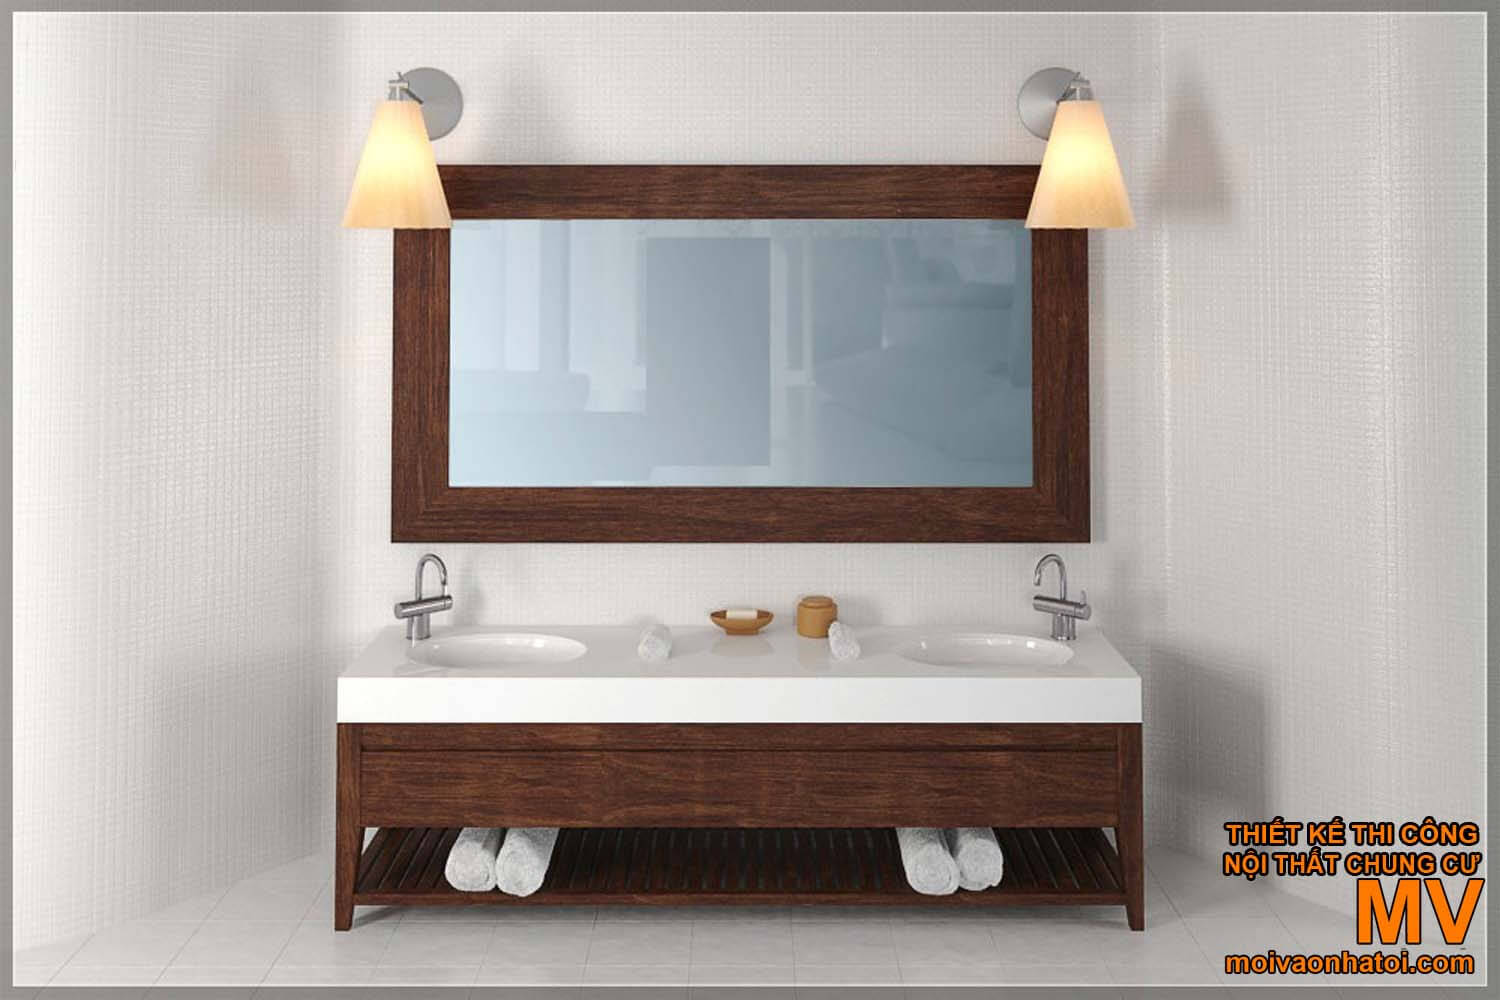 lavar o rosto lavabo, belo design moderno banheiro